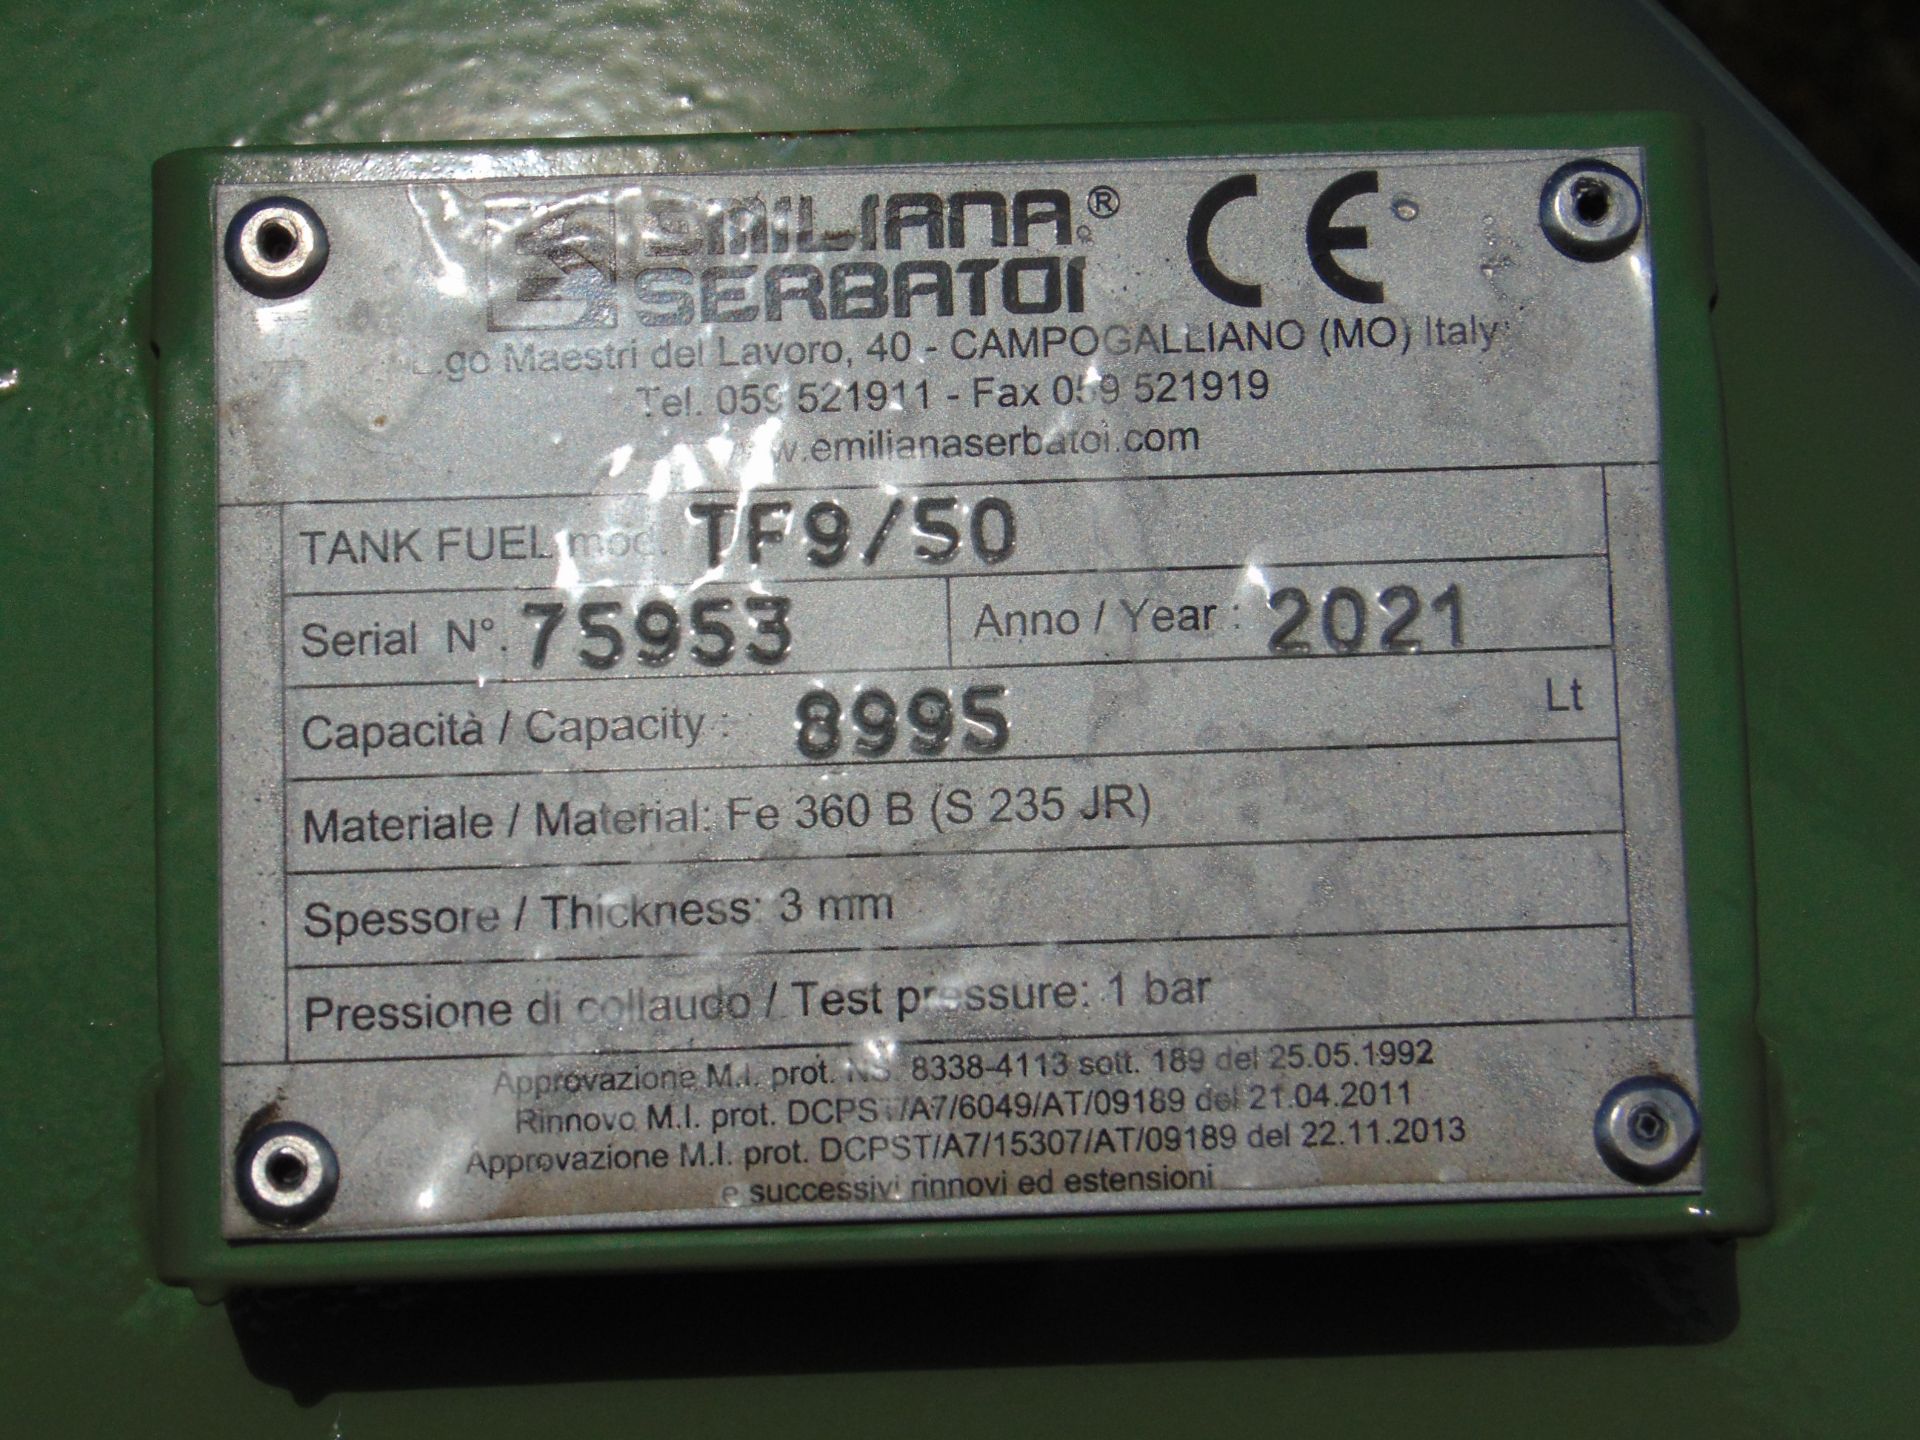 2021 Unused Emiliani Serbatoi 8995 litre bunded Static Fuel installation c/w 230V Pump meter ETC - Image 9 of 9